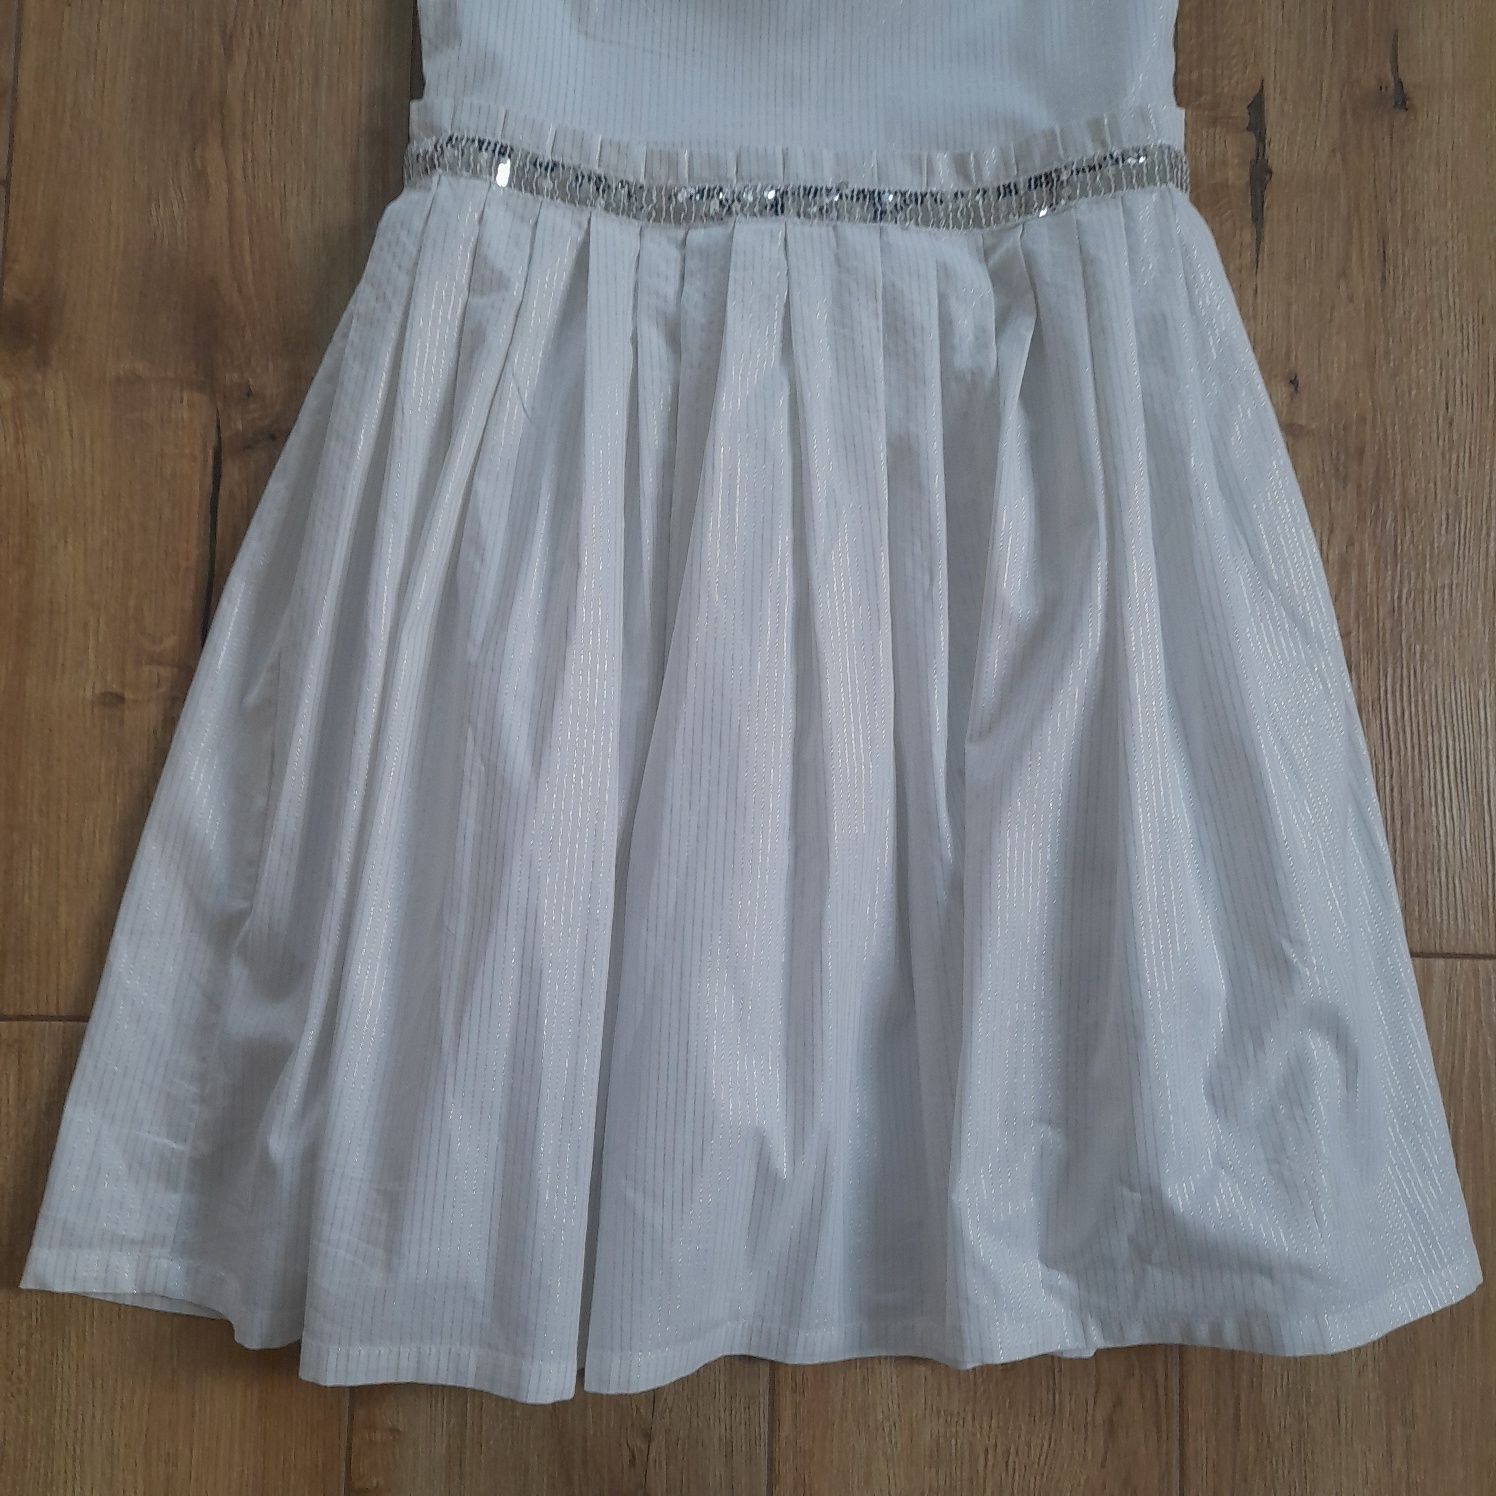 Biała sukienka 158 cm